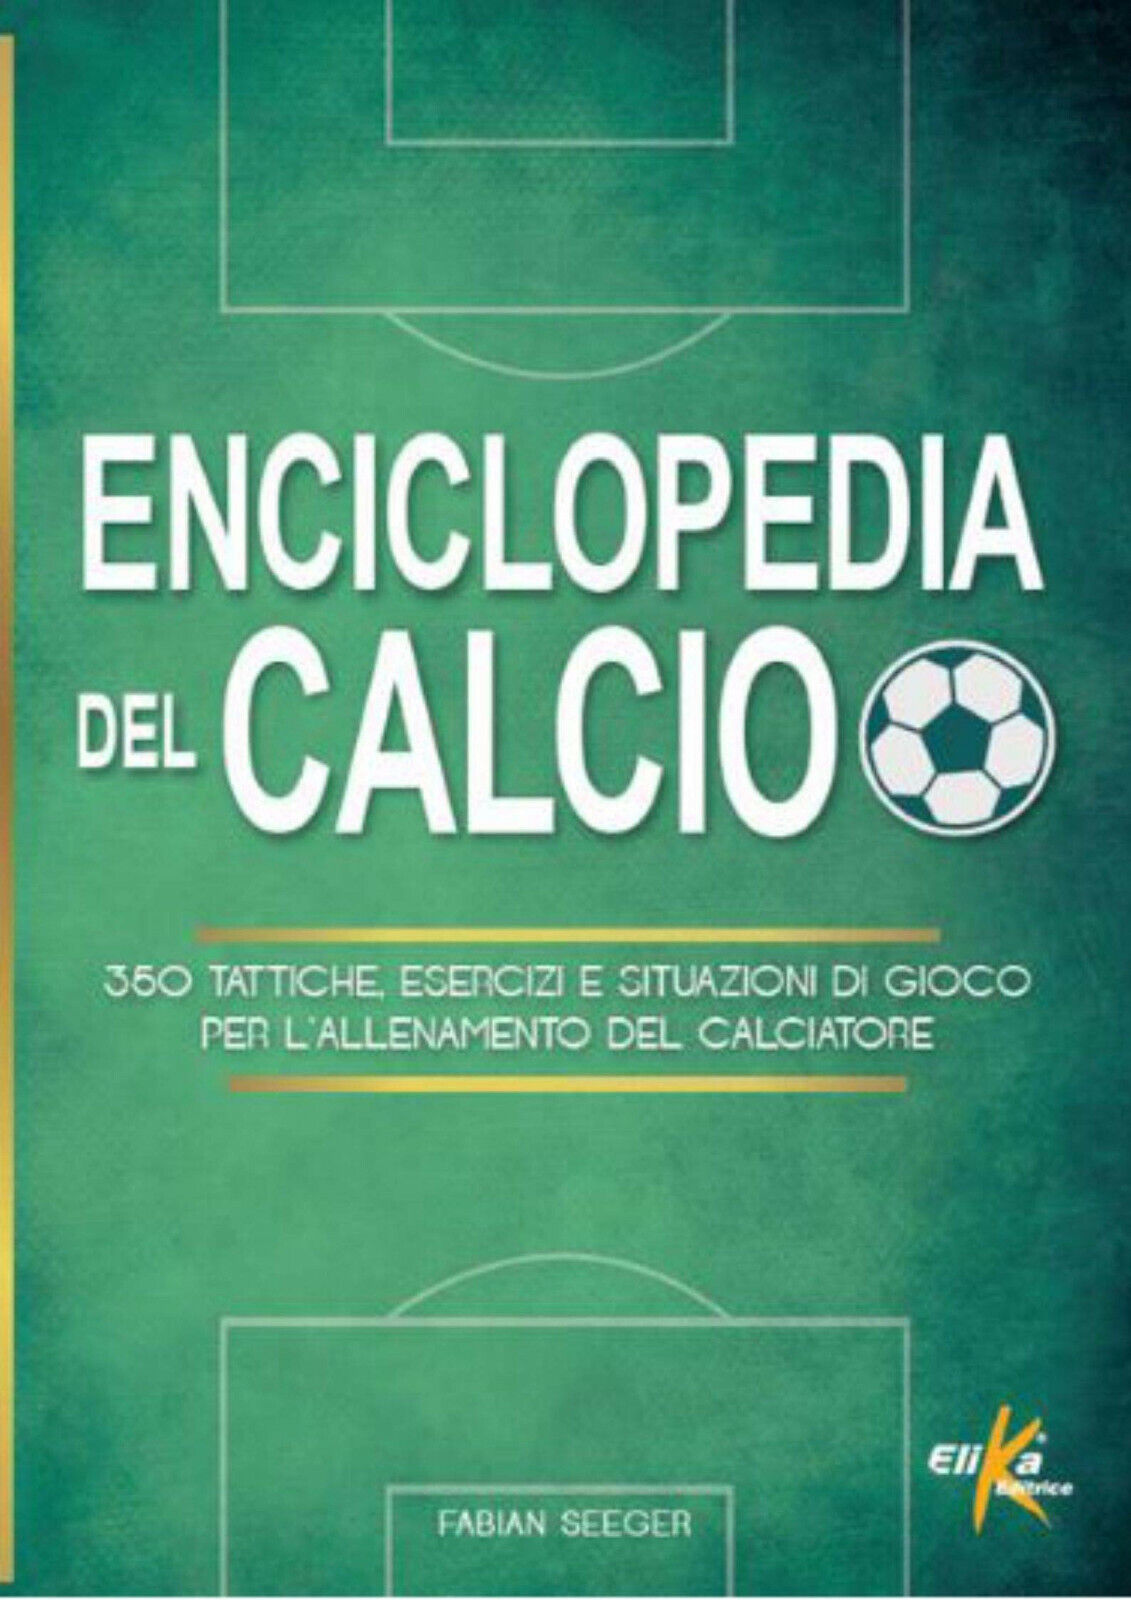 Enciclopedia del calcio - Fabian Seeger - Elika, 2019 libro usato